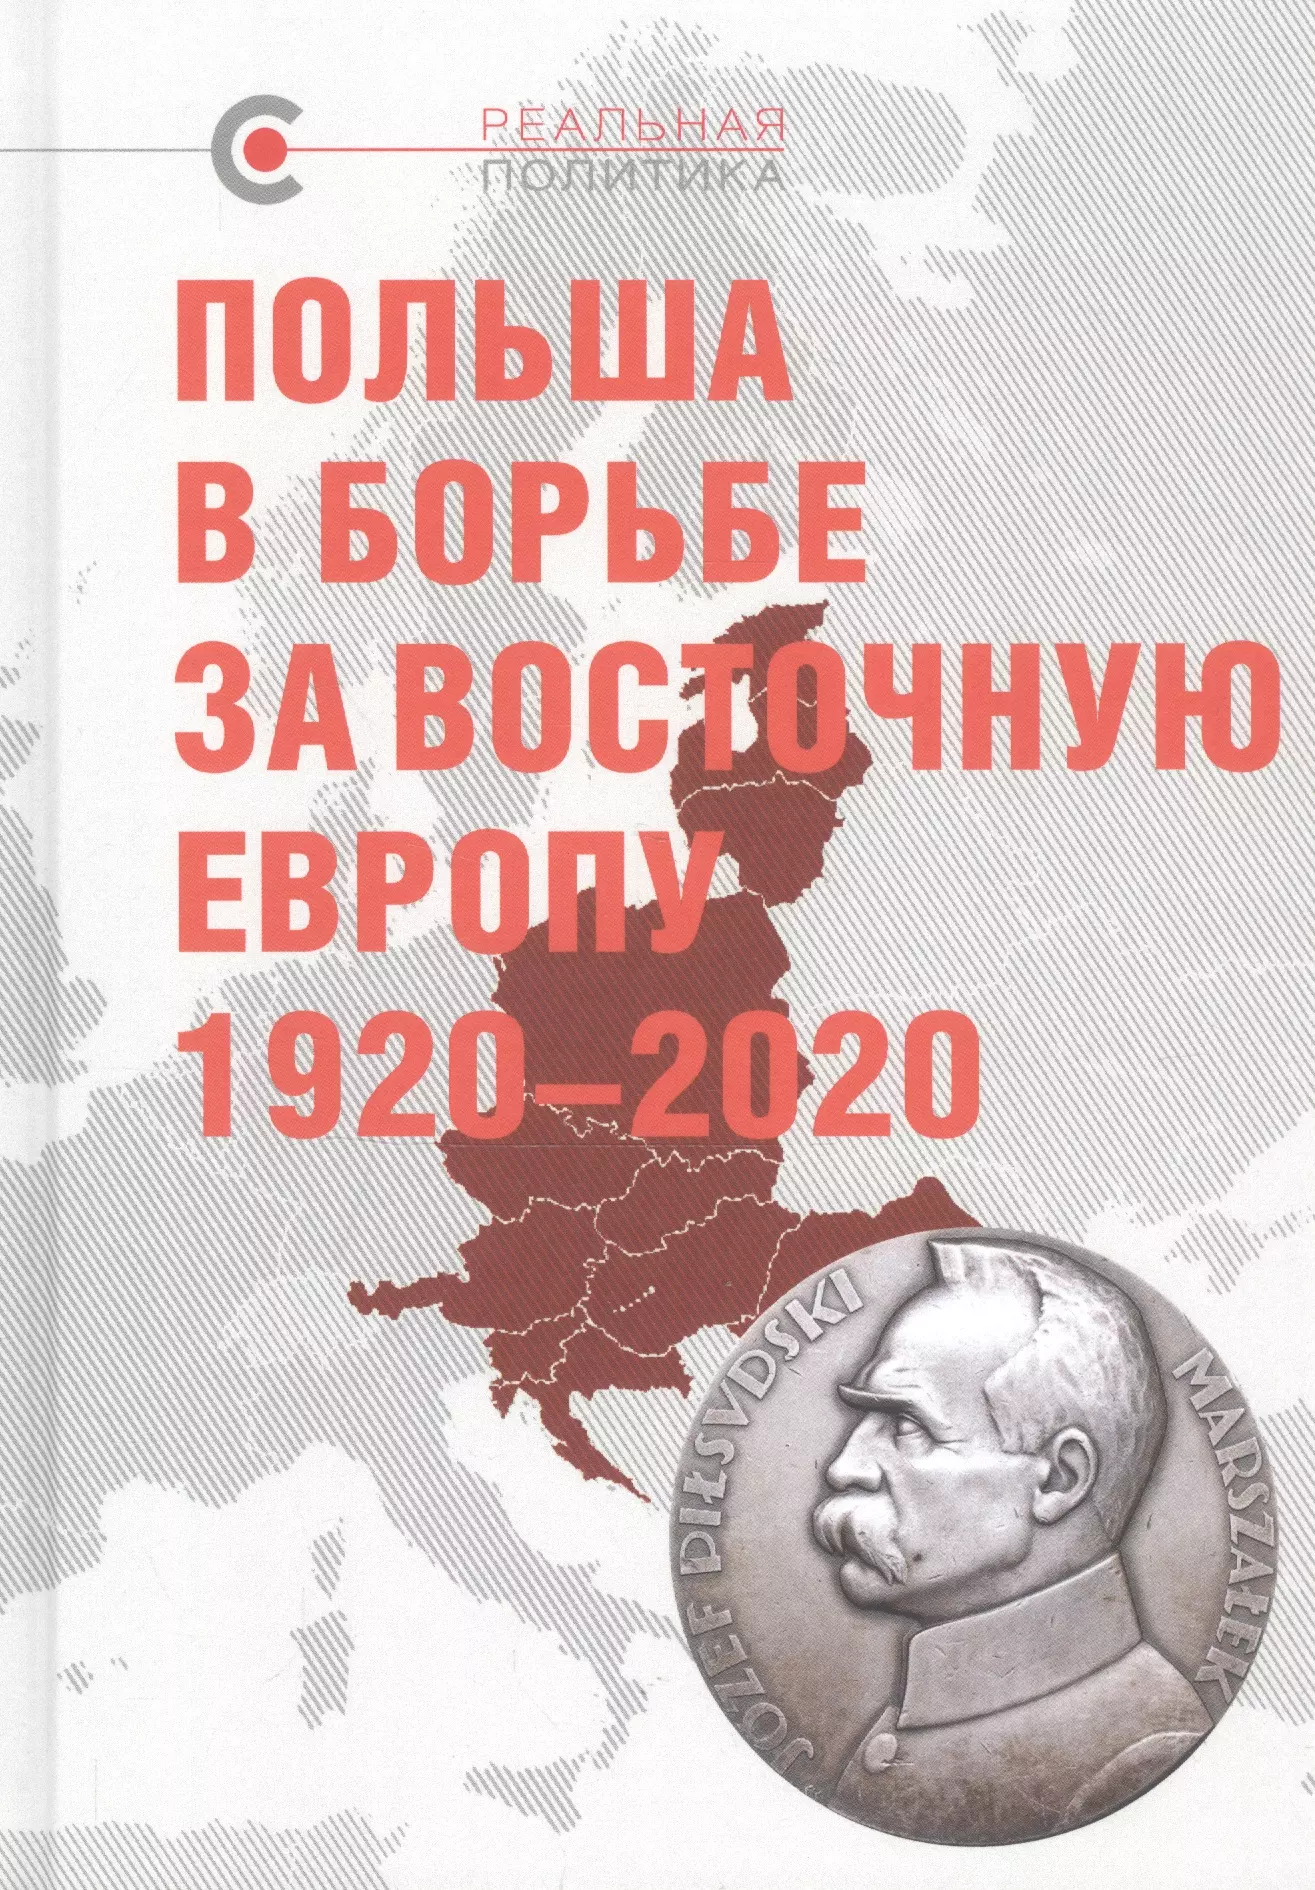  - Польша в борьбе за Восточную Европу 1920–2020